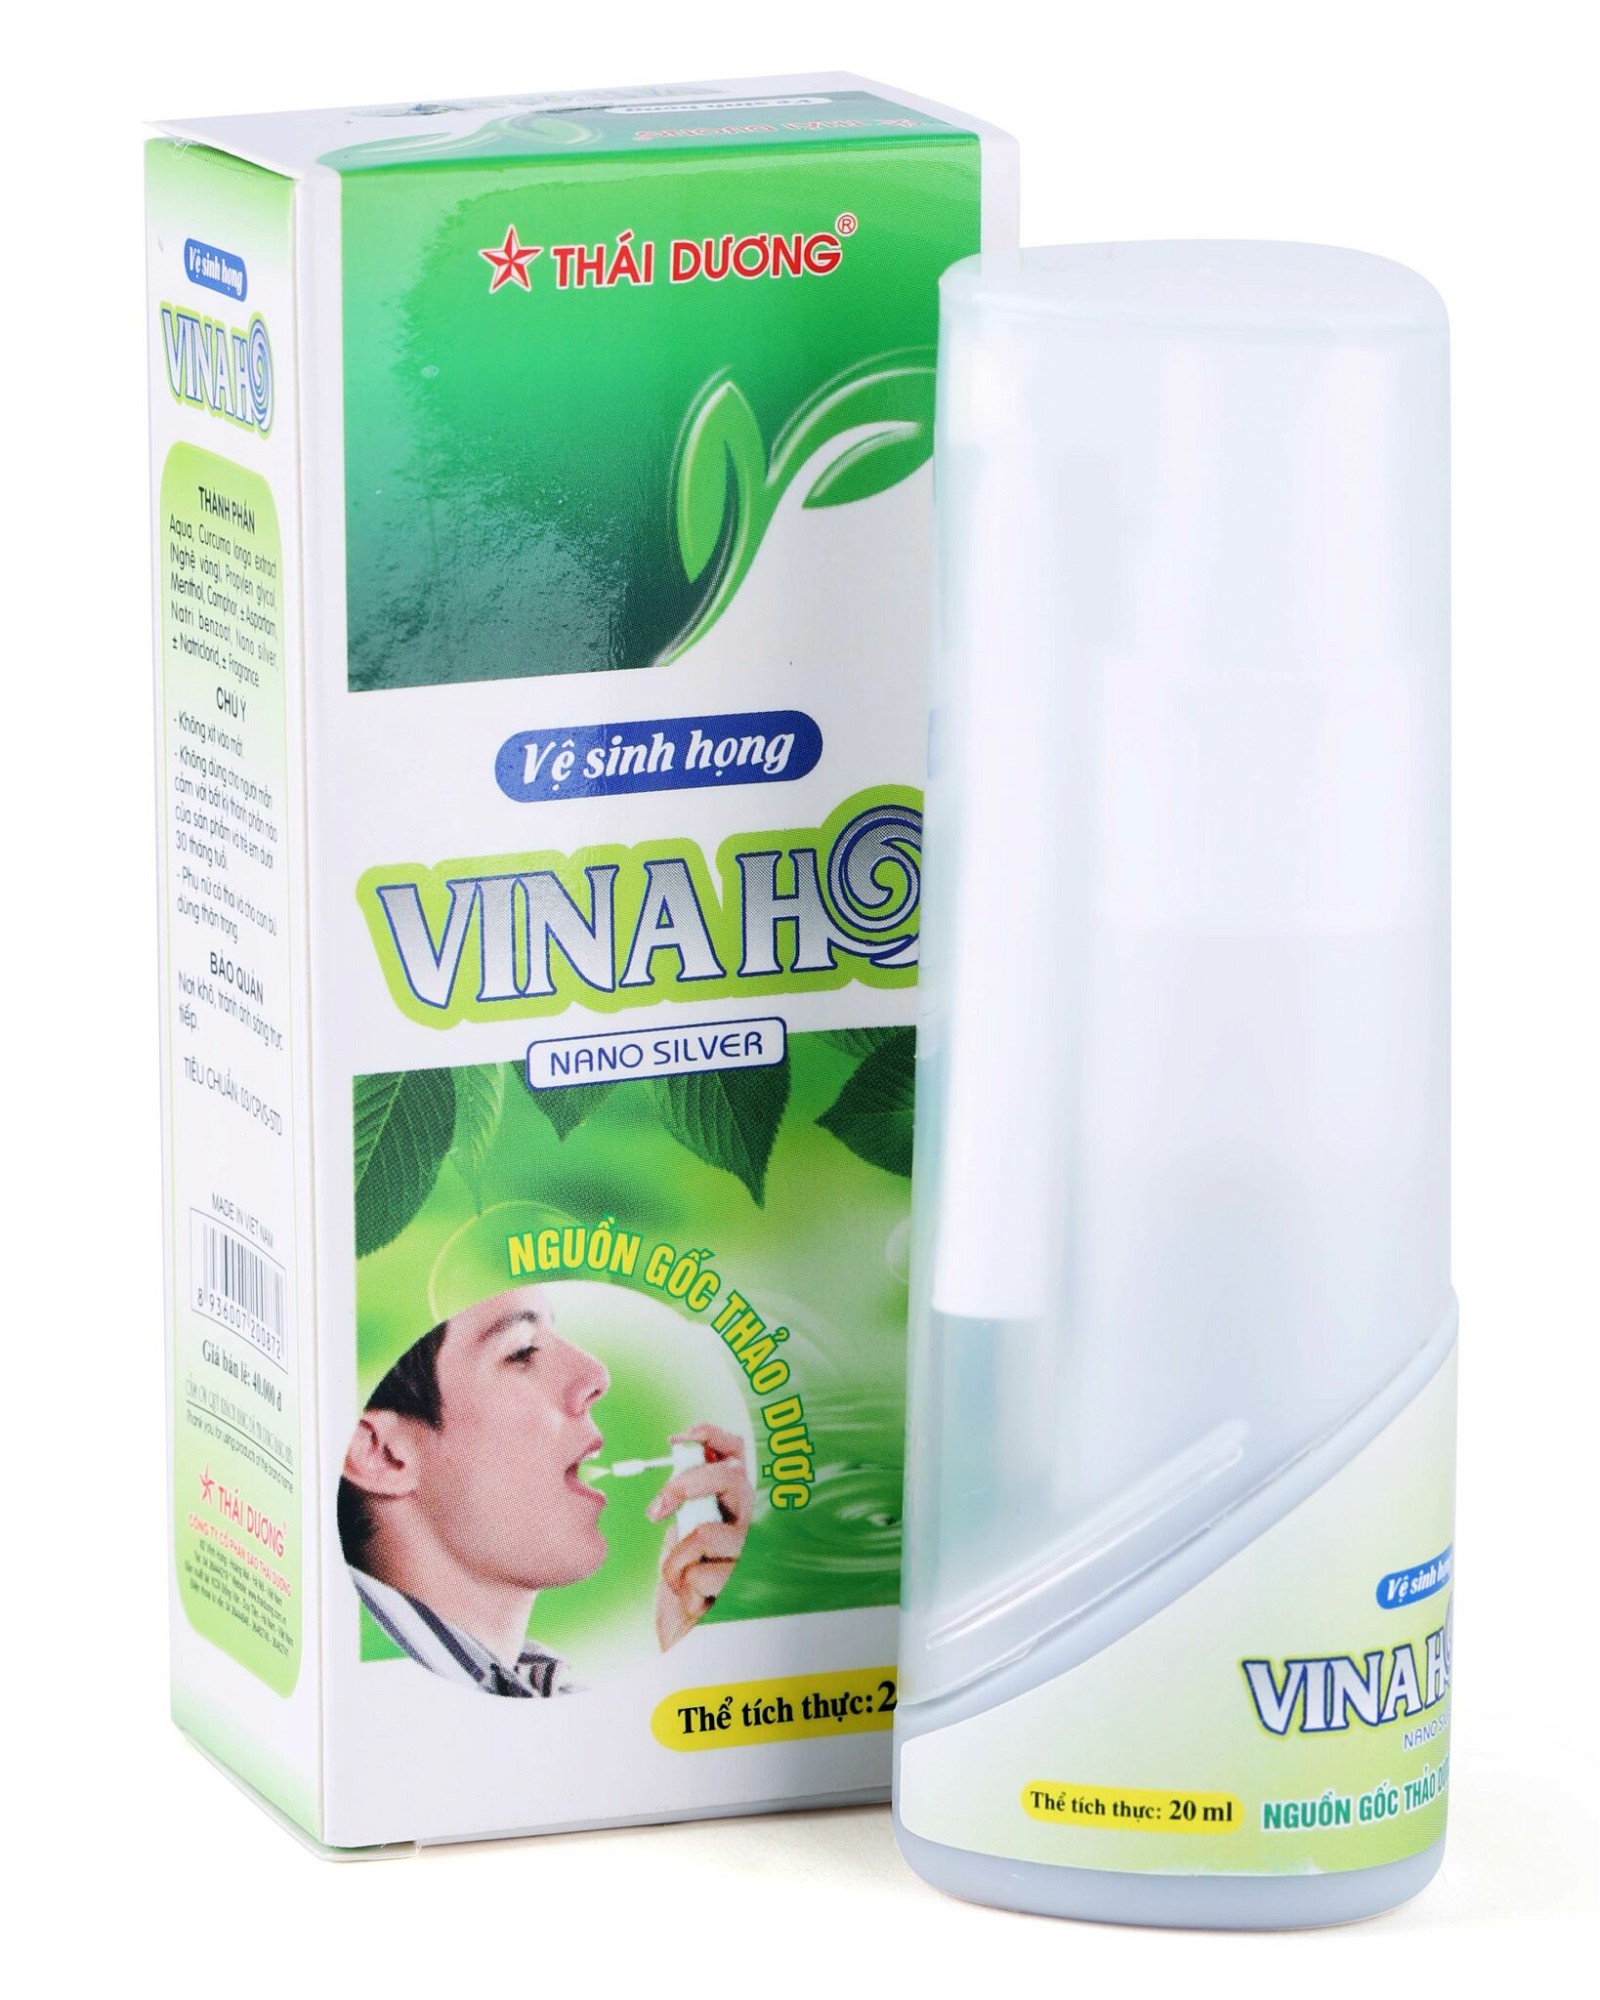 Thông tin về sản phẩm xịt họng Vinaho